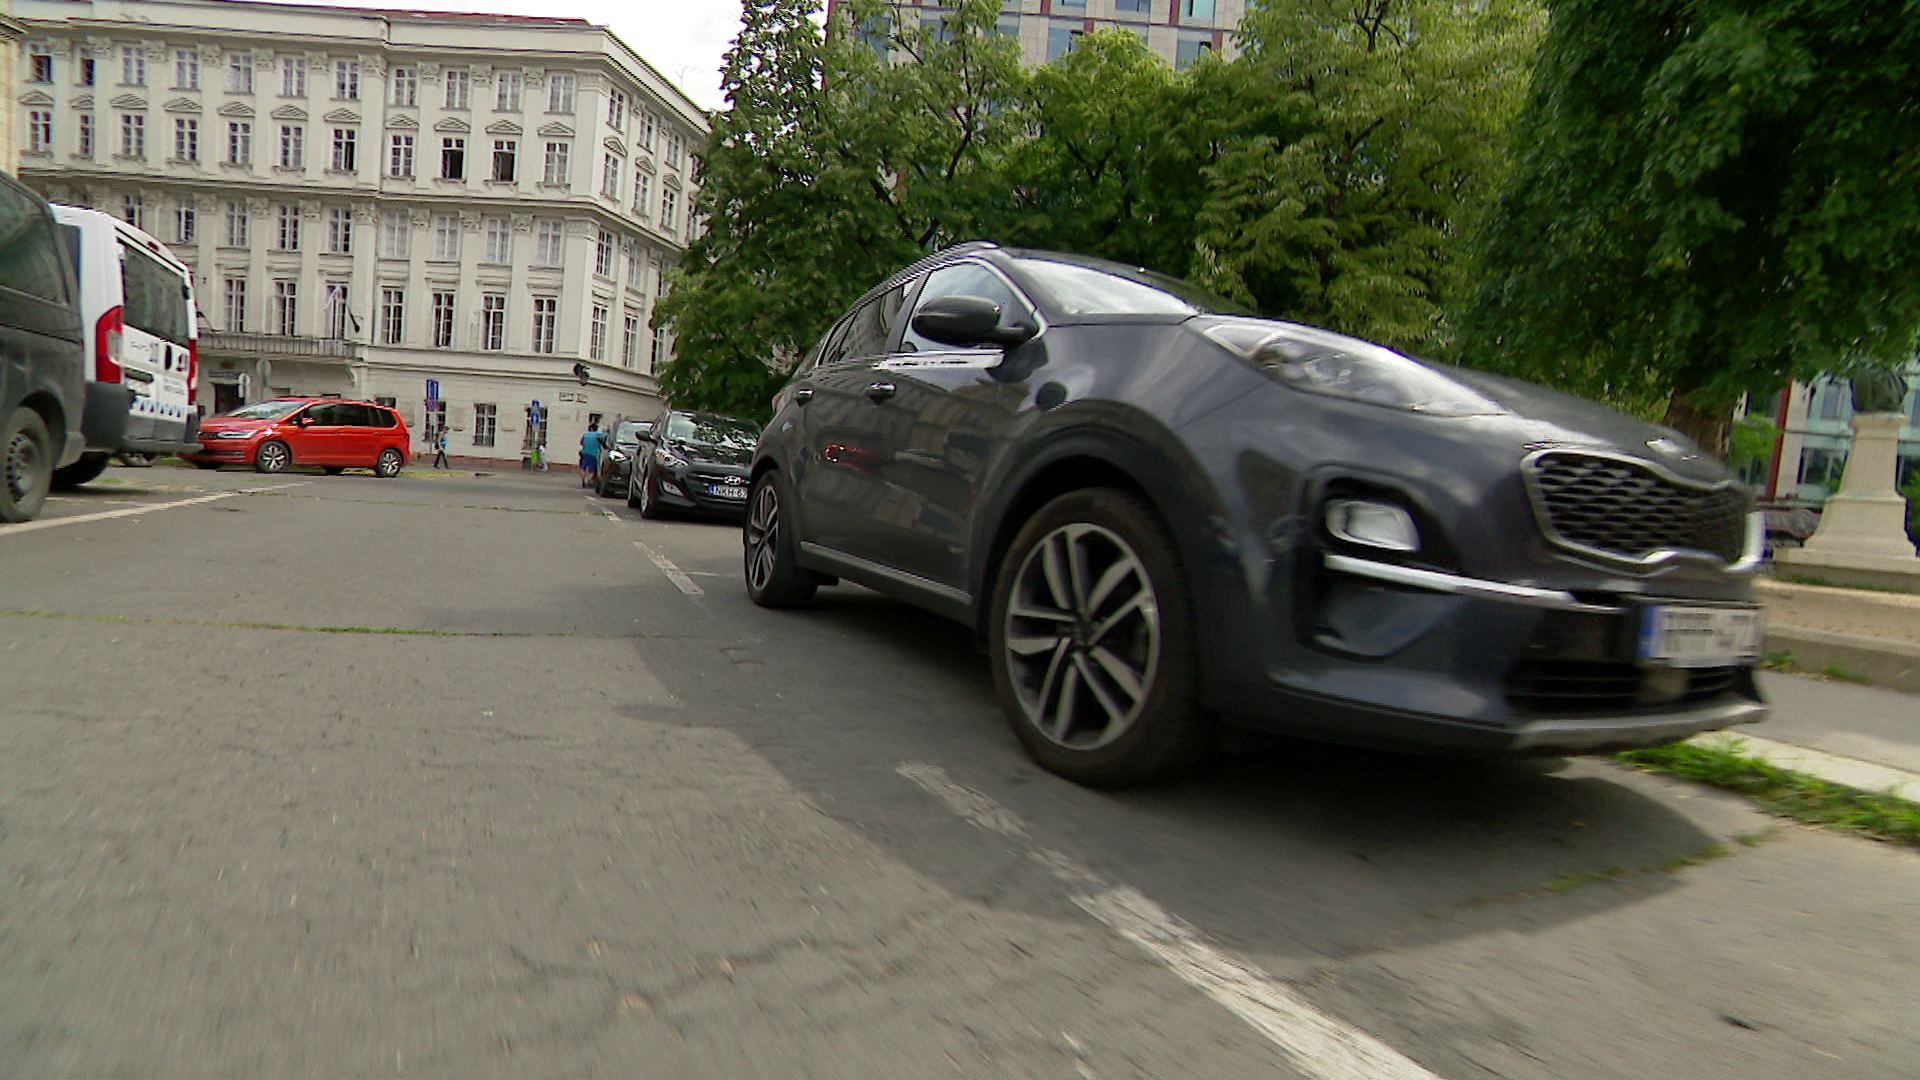 Mától jelentősen drágult a parkolás Budapesten